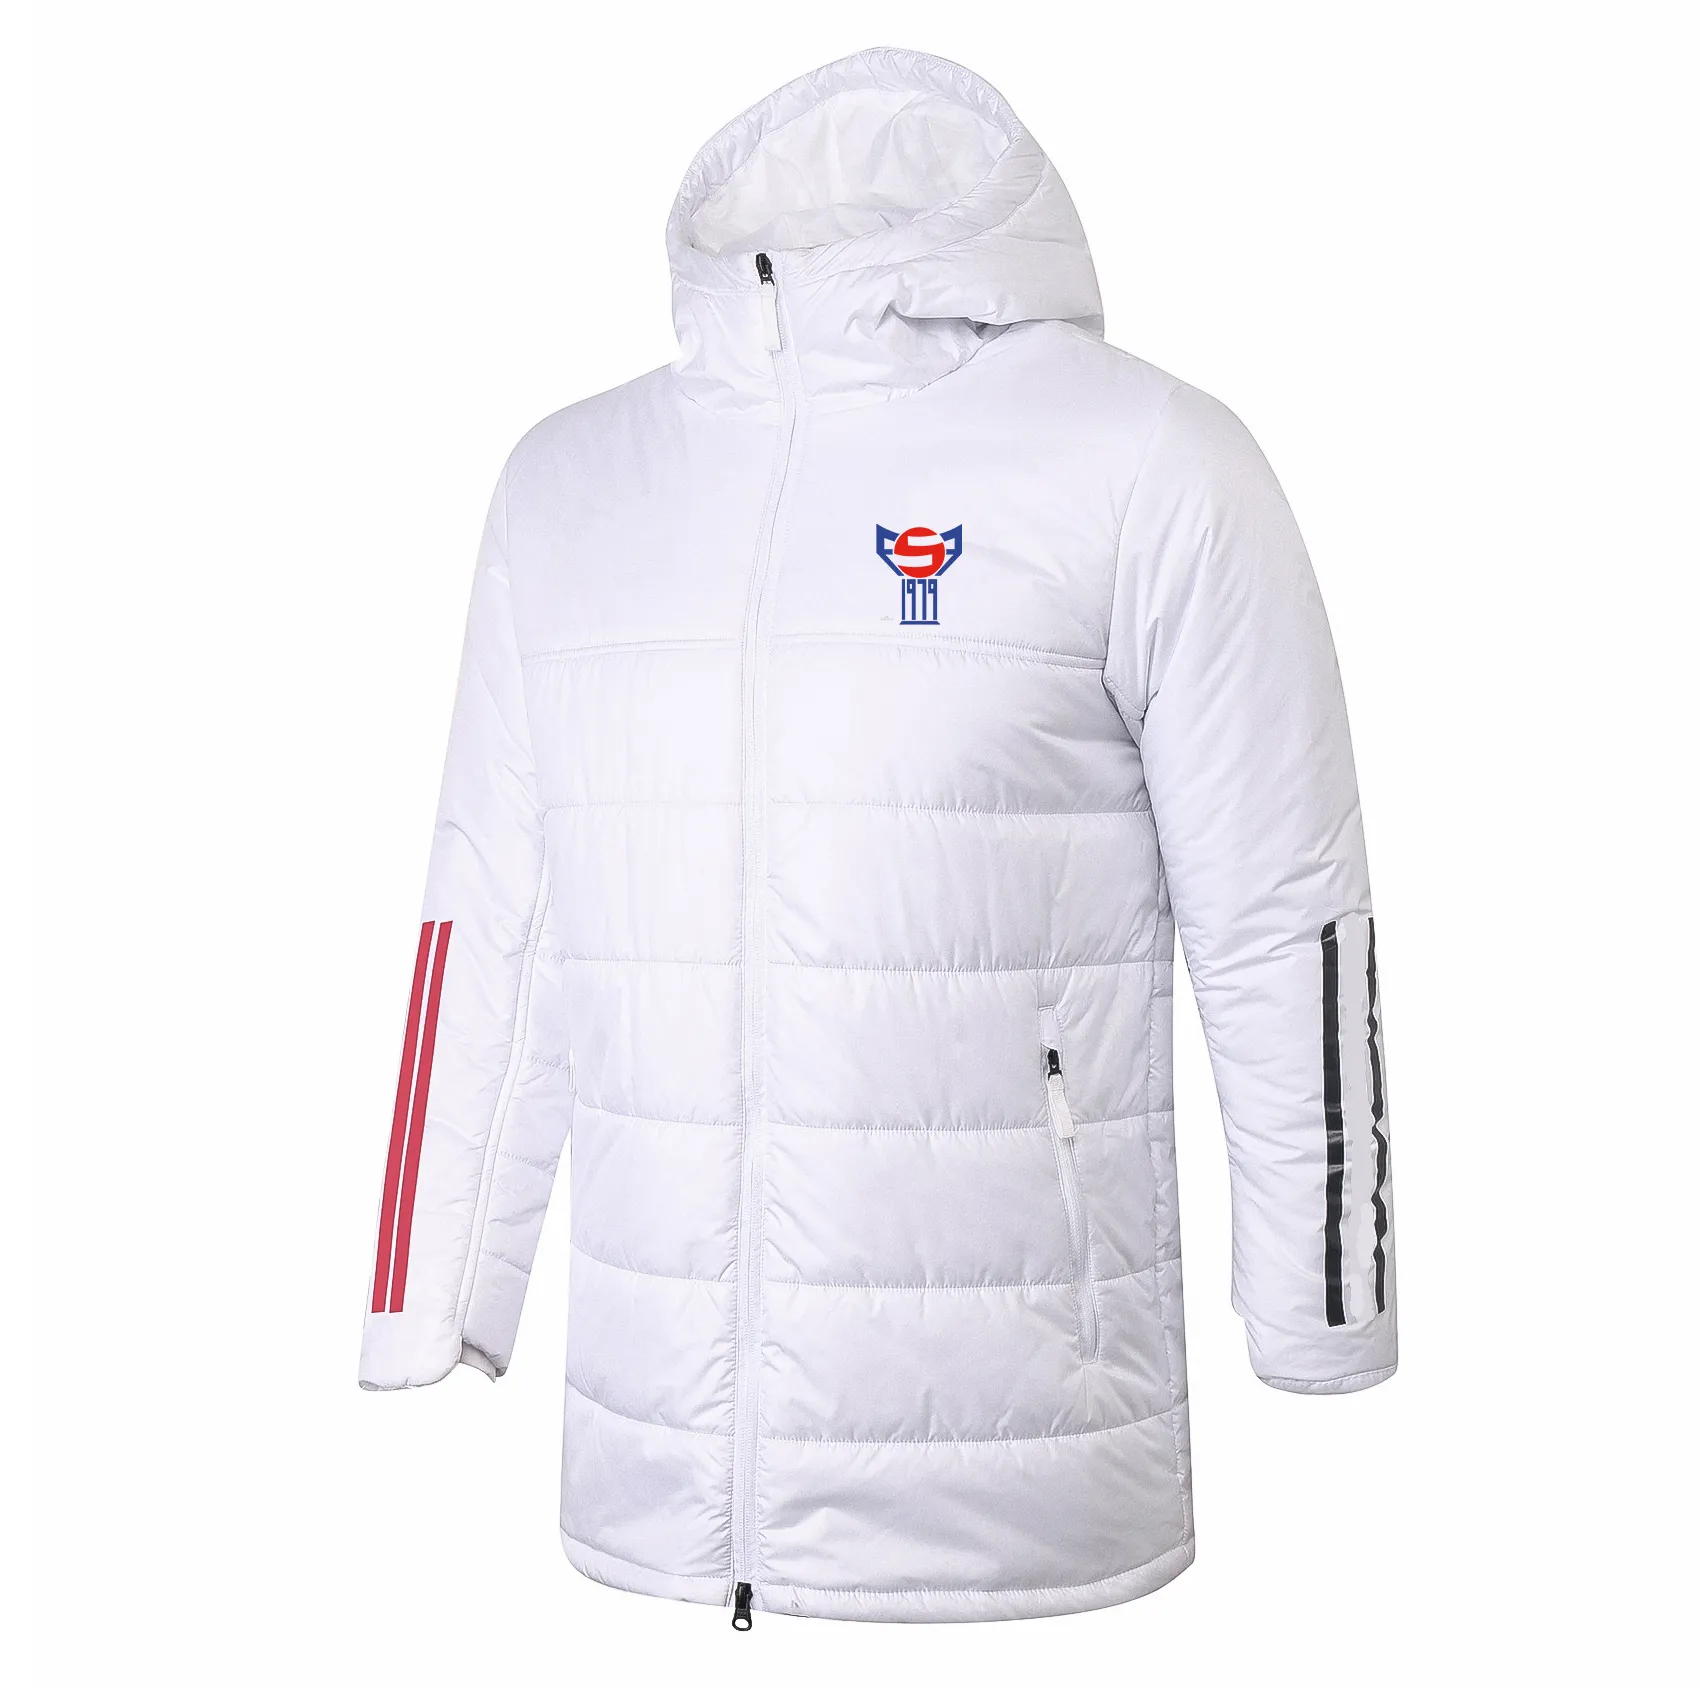 Faroe Islands 남자 다운 파카 파카스 겨울 프리 매칭 후드 코트 겨울 면화 코트 전체 지퍼 레저 스포츠 야외 따뜻한 스웨트 셔츠